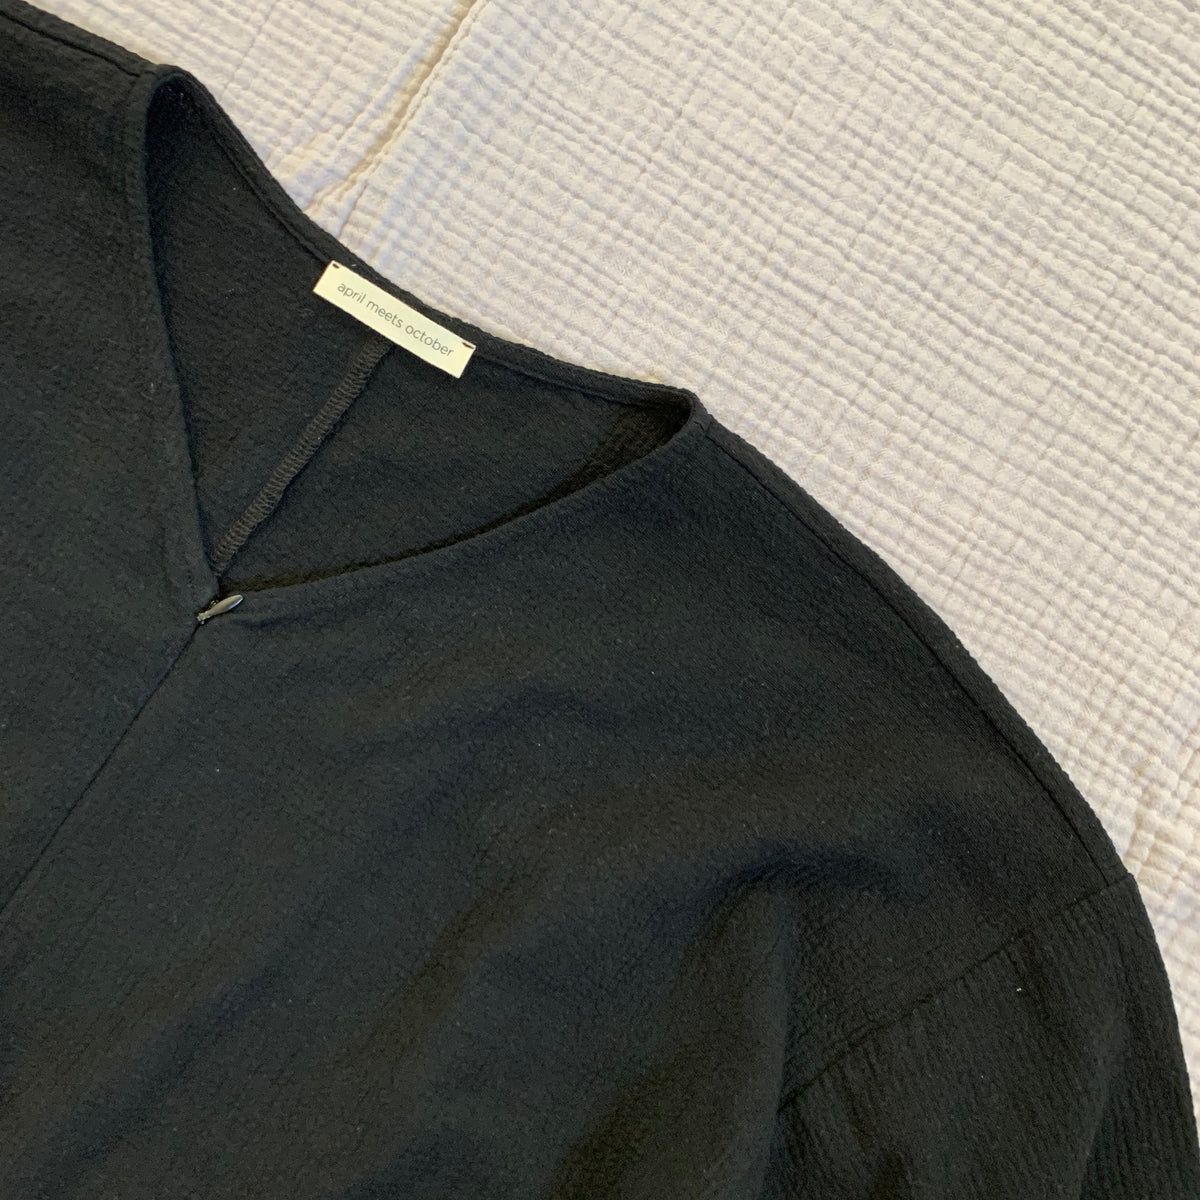 Snuggle Jumpsuit Black – April meets october